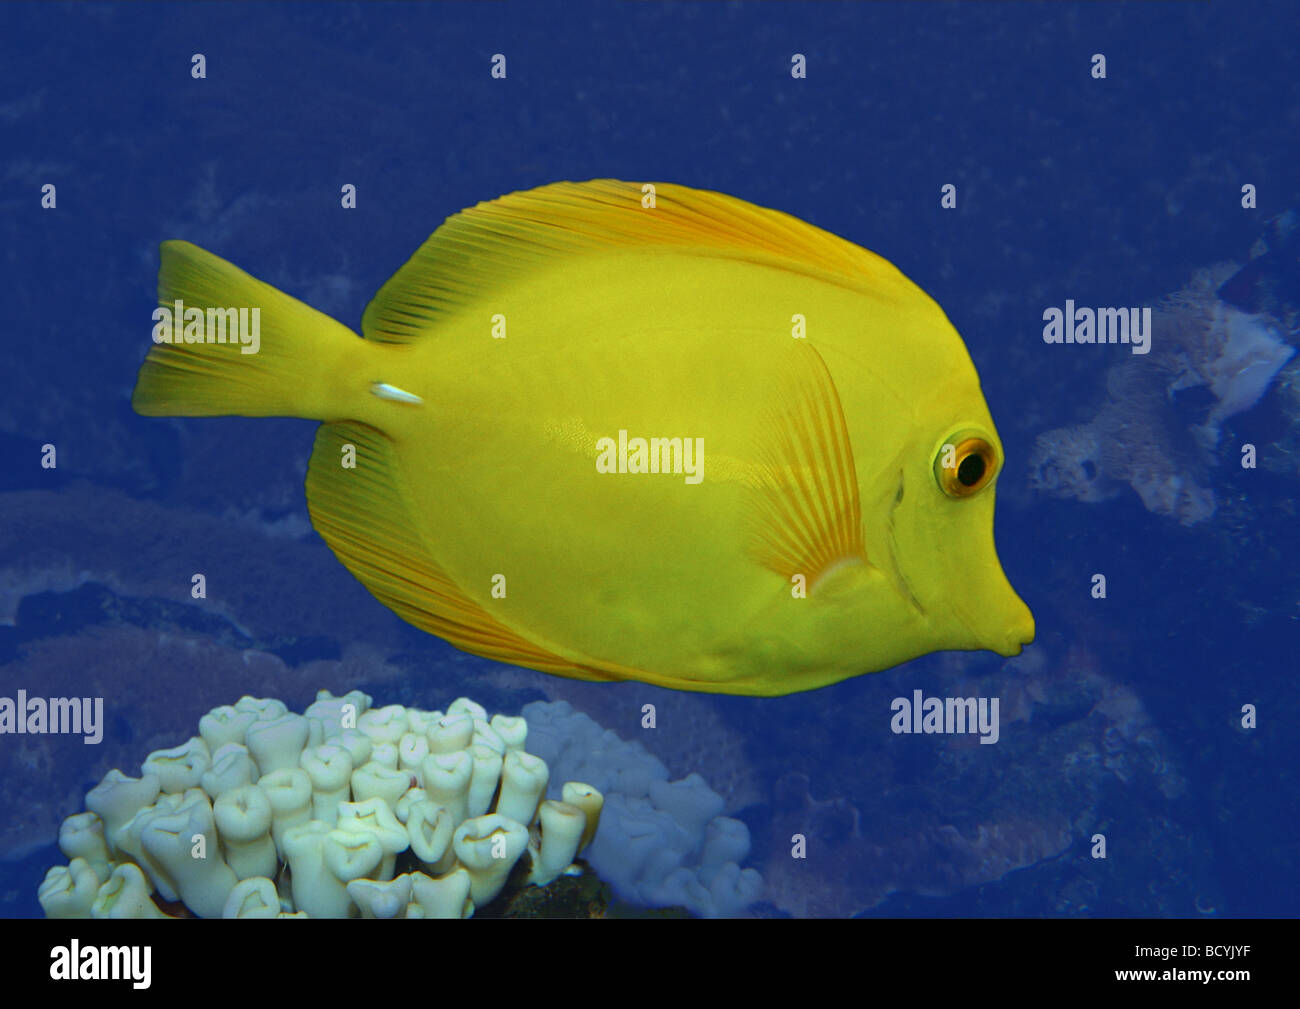 olive surgeonfish / Acanthurus olivaceus Stock Photo